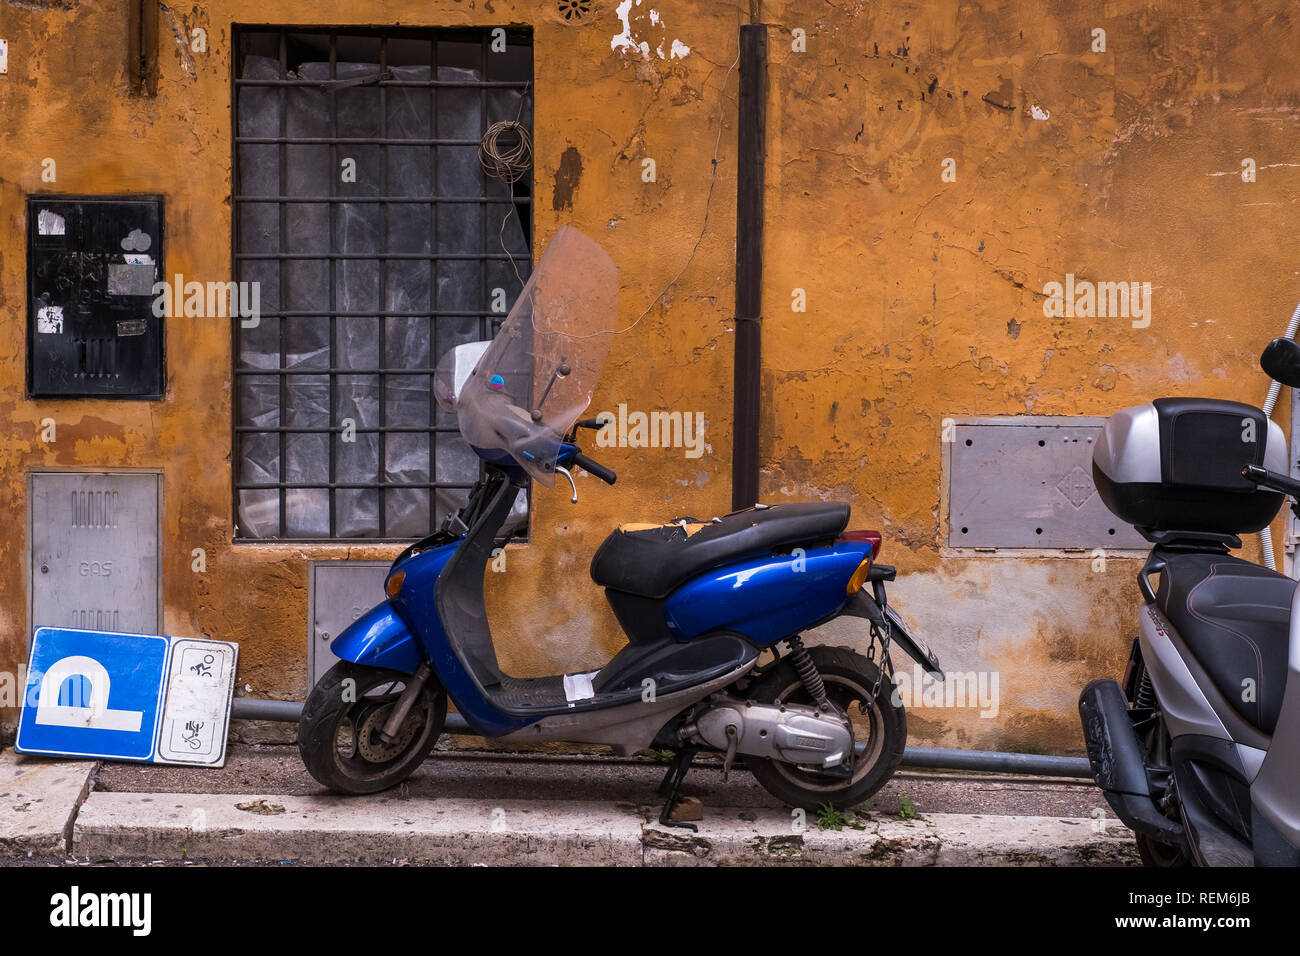 ROME, ITALIE - 06 janvier 2019 : la dégradation urbaine avec les scooters et signal de stationnement Banque D'Images